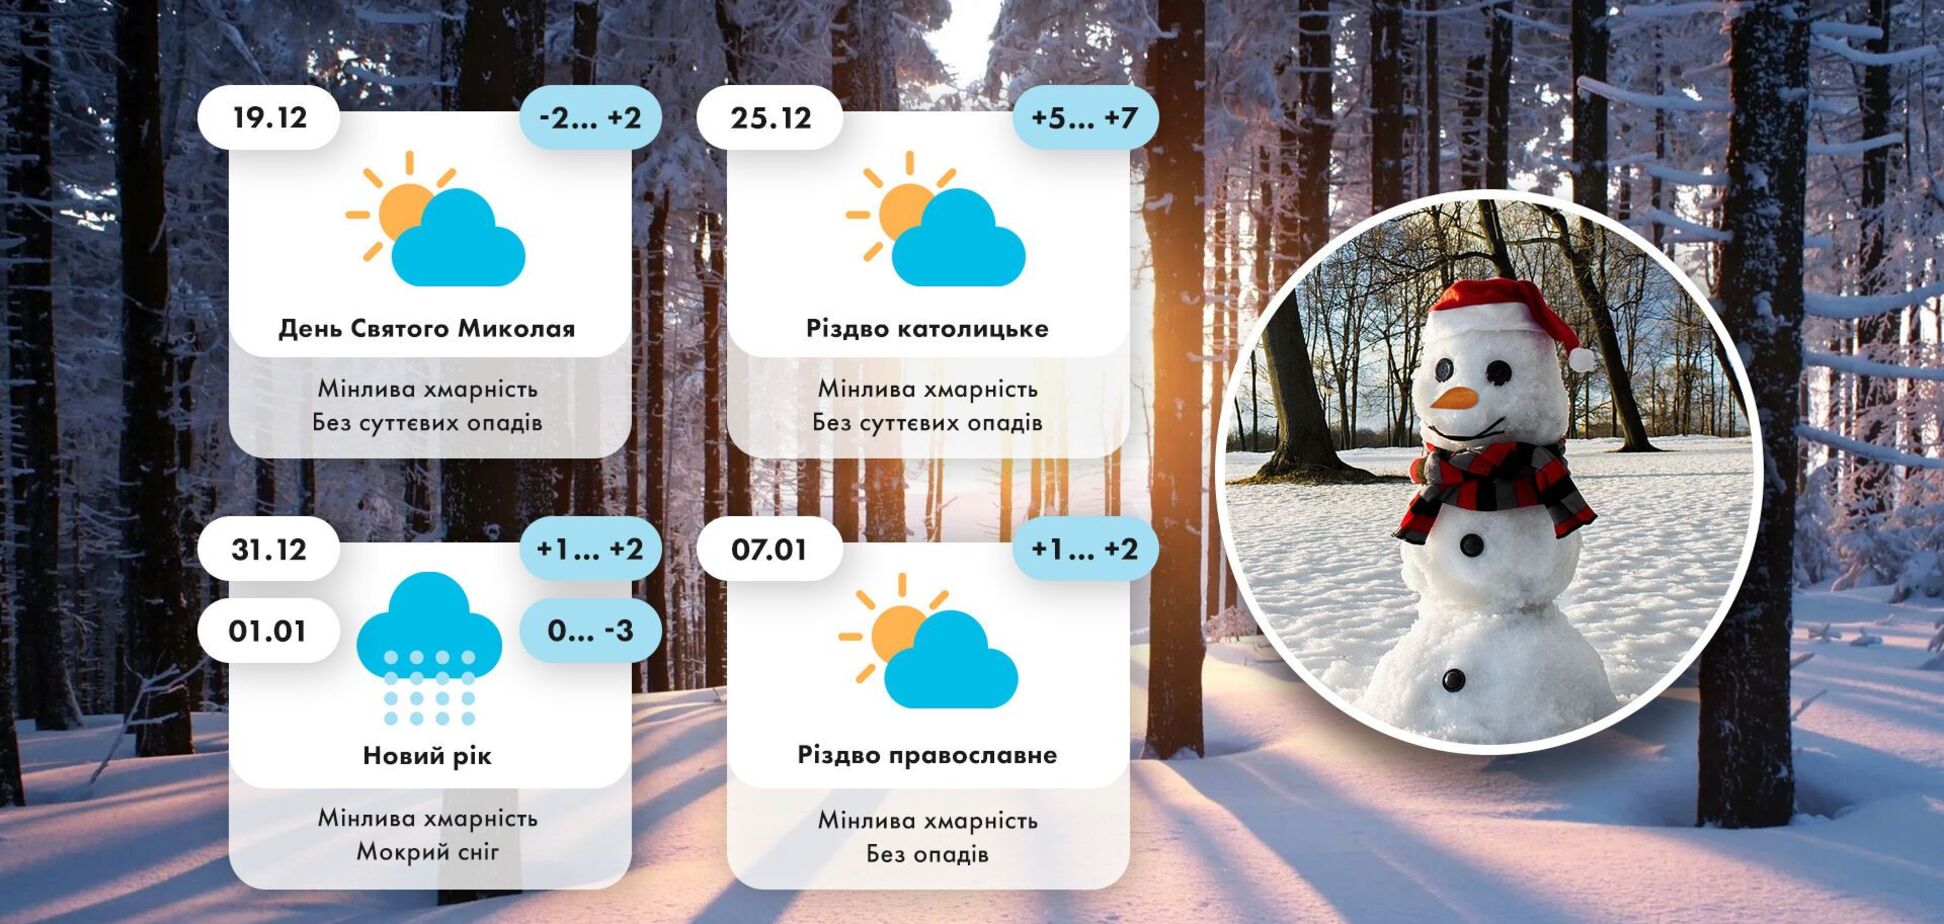 Николай, Новый год и Рождество в Украине не будут по-настоящему зимними: прогноз погоды на праздники